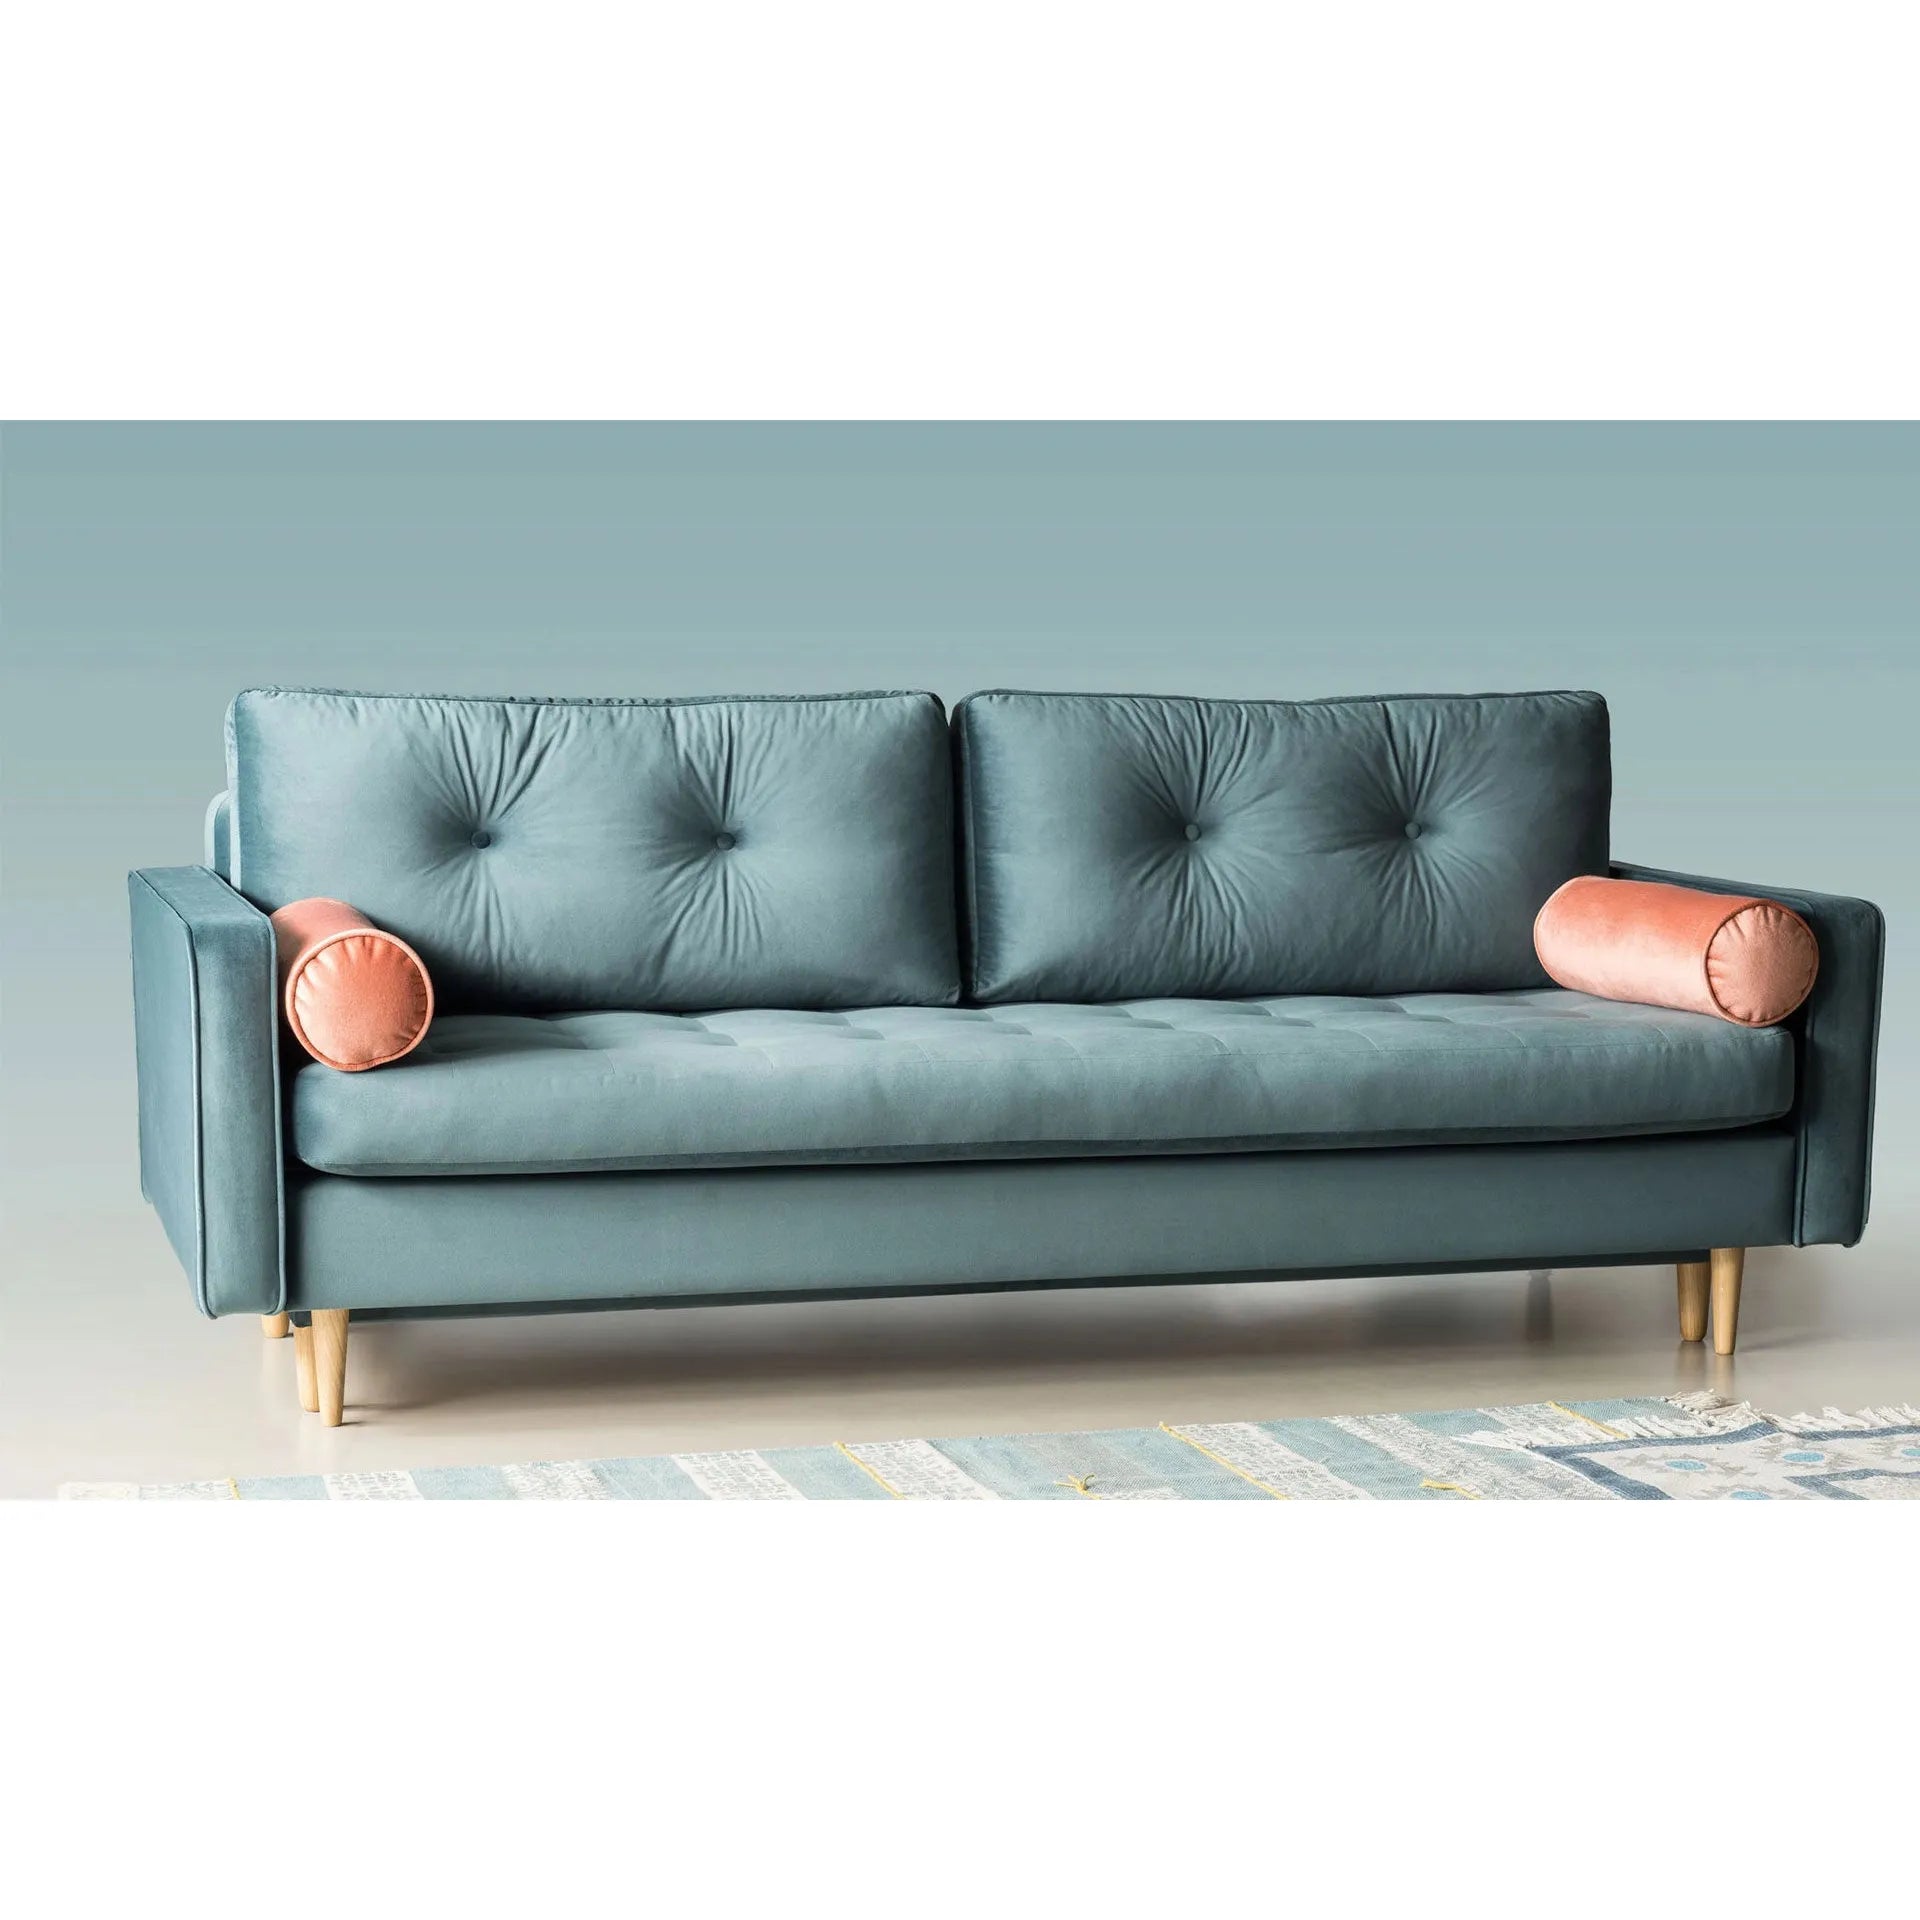 ESME dygsniuota 3 vietų sofa lova, žalia/mėlyna spalva